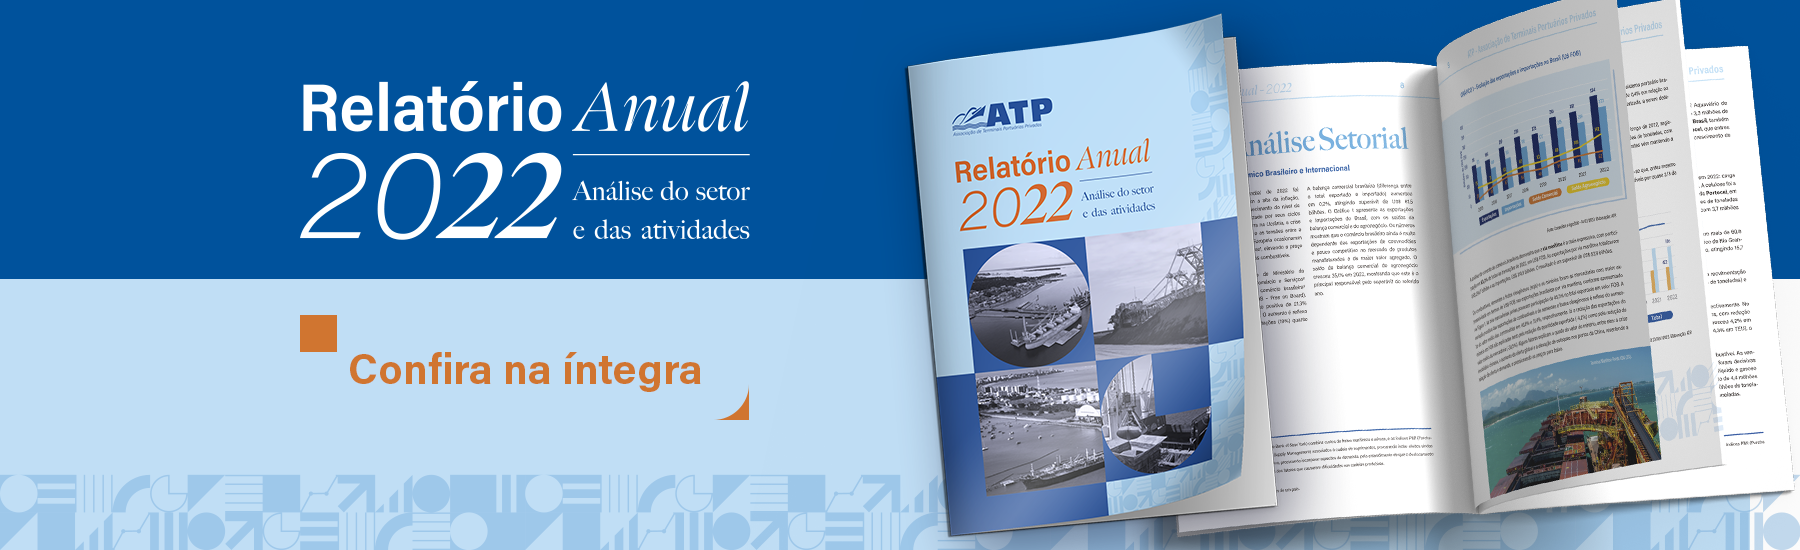 ATP-2022-relatorio-anual